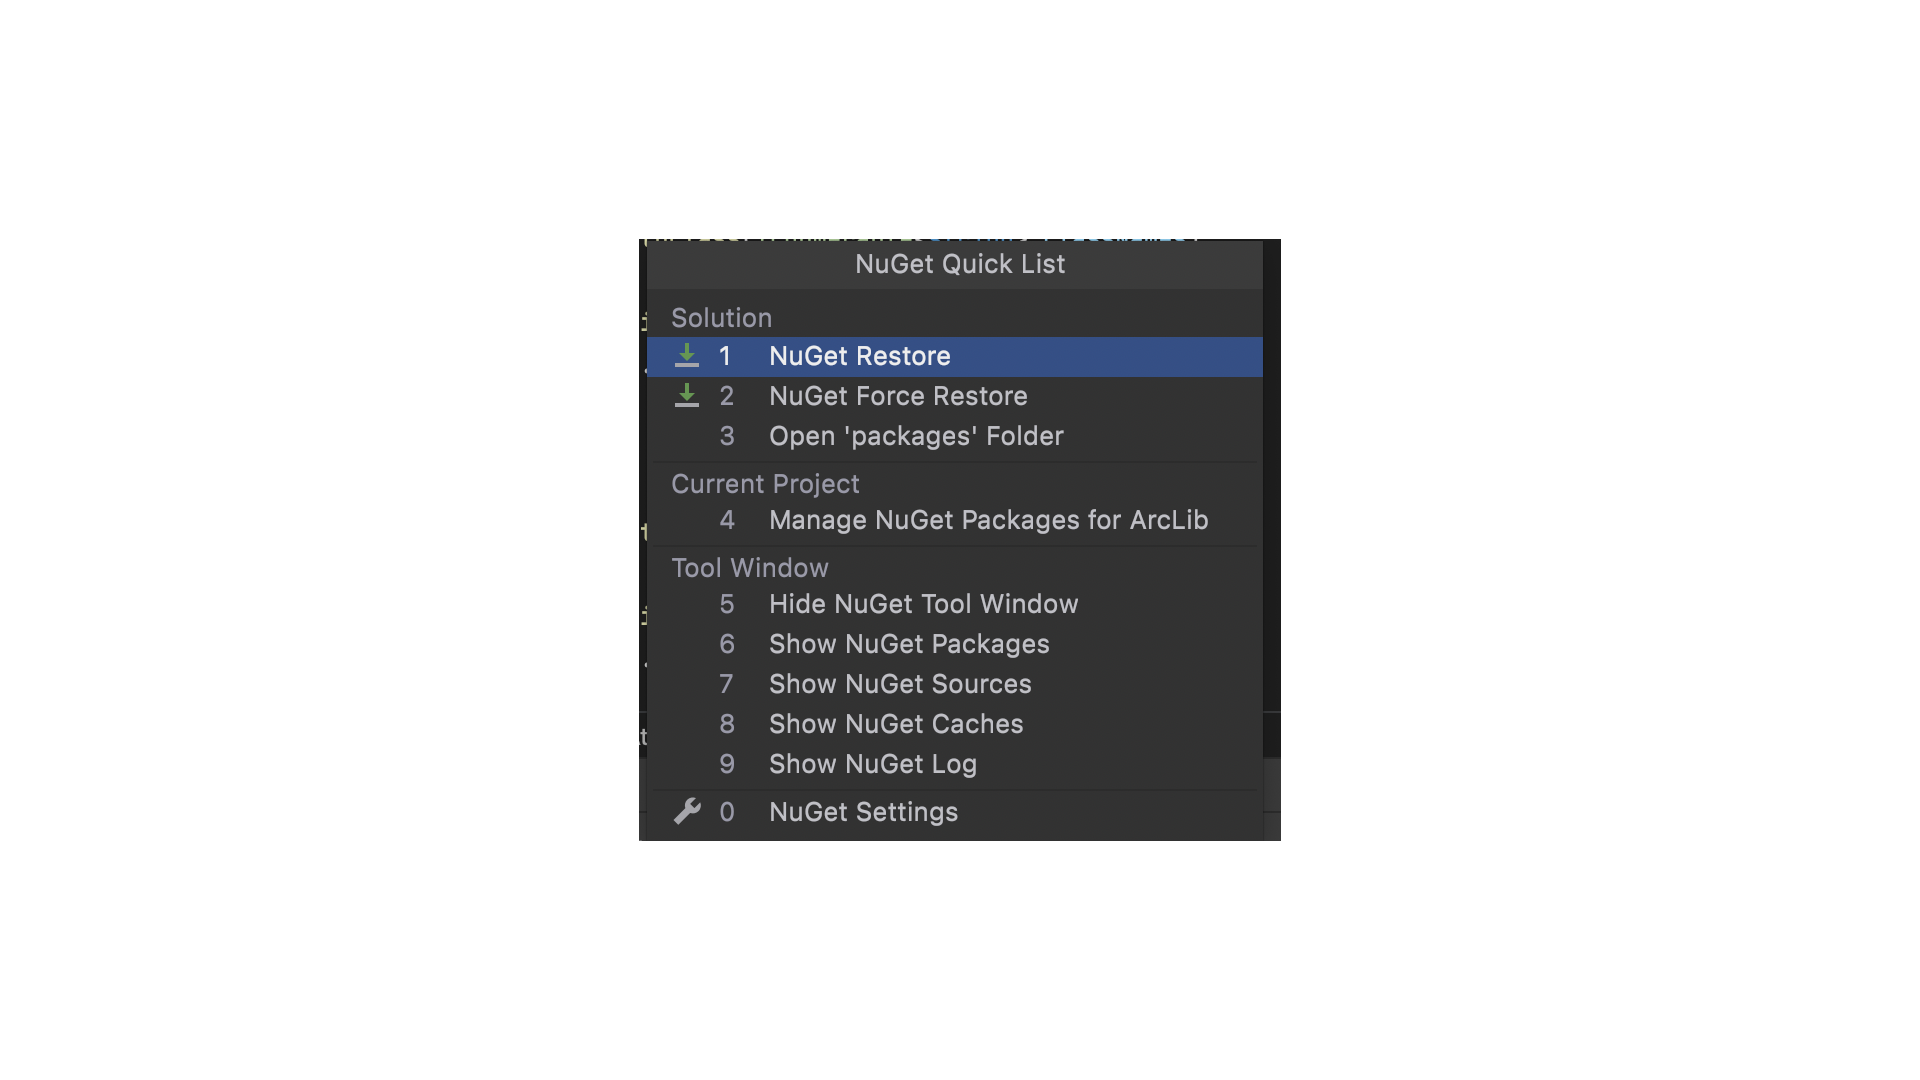 JetBrains Rider NuGet Quick list menu